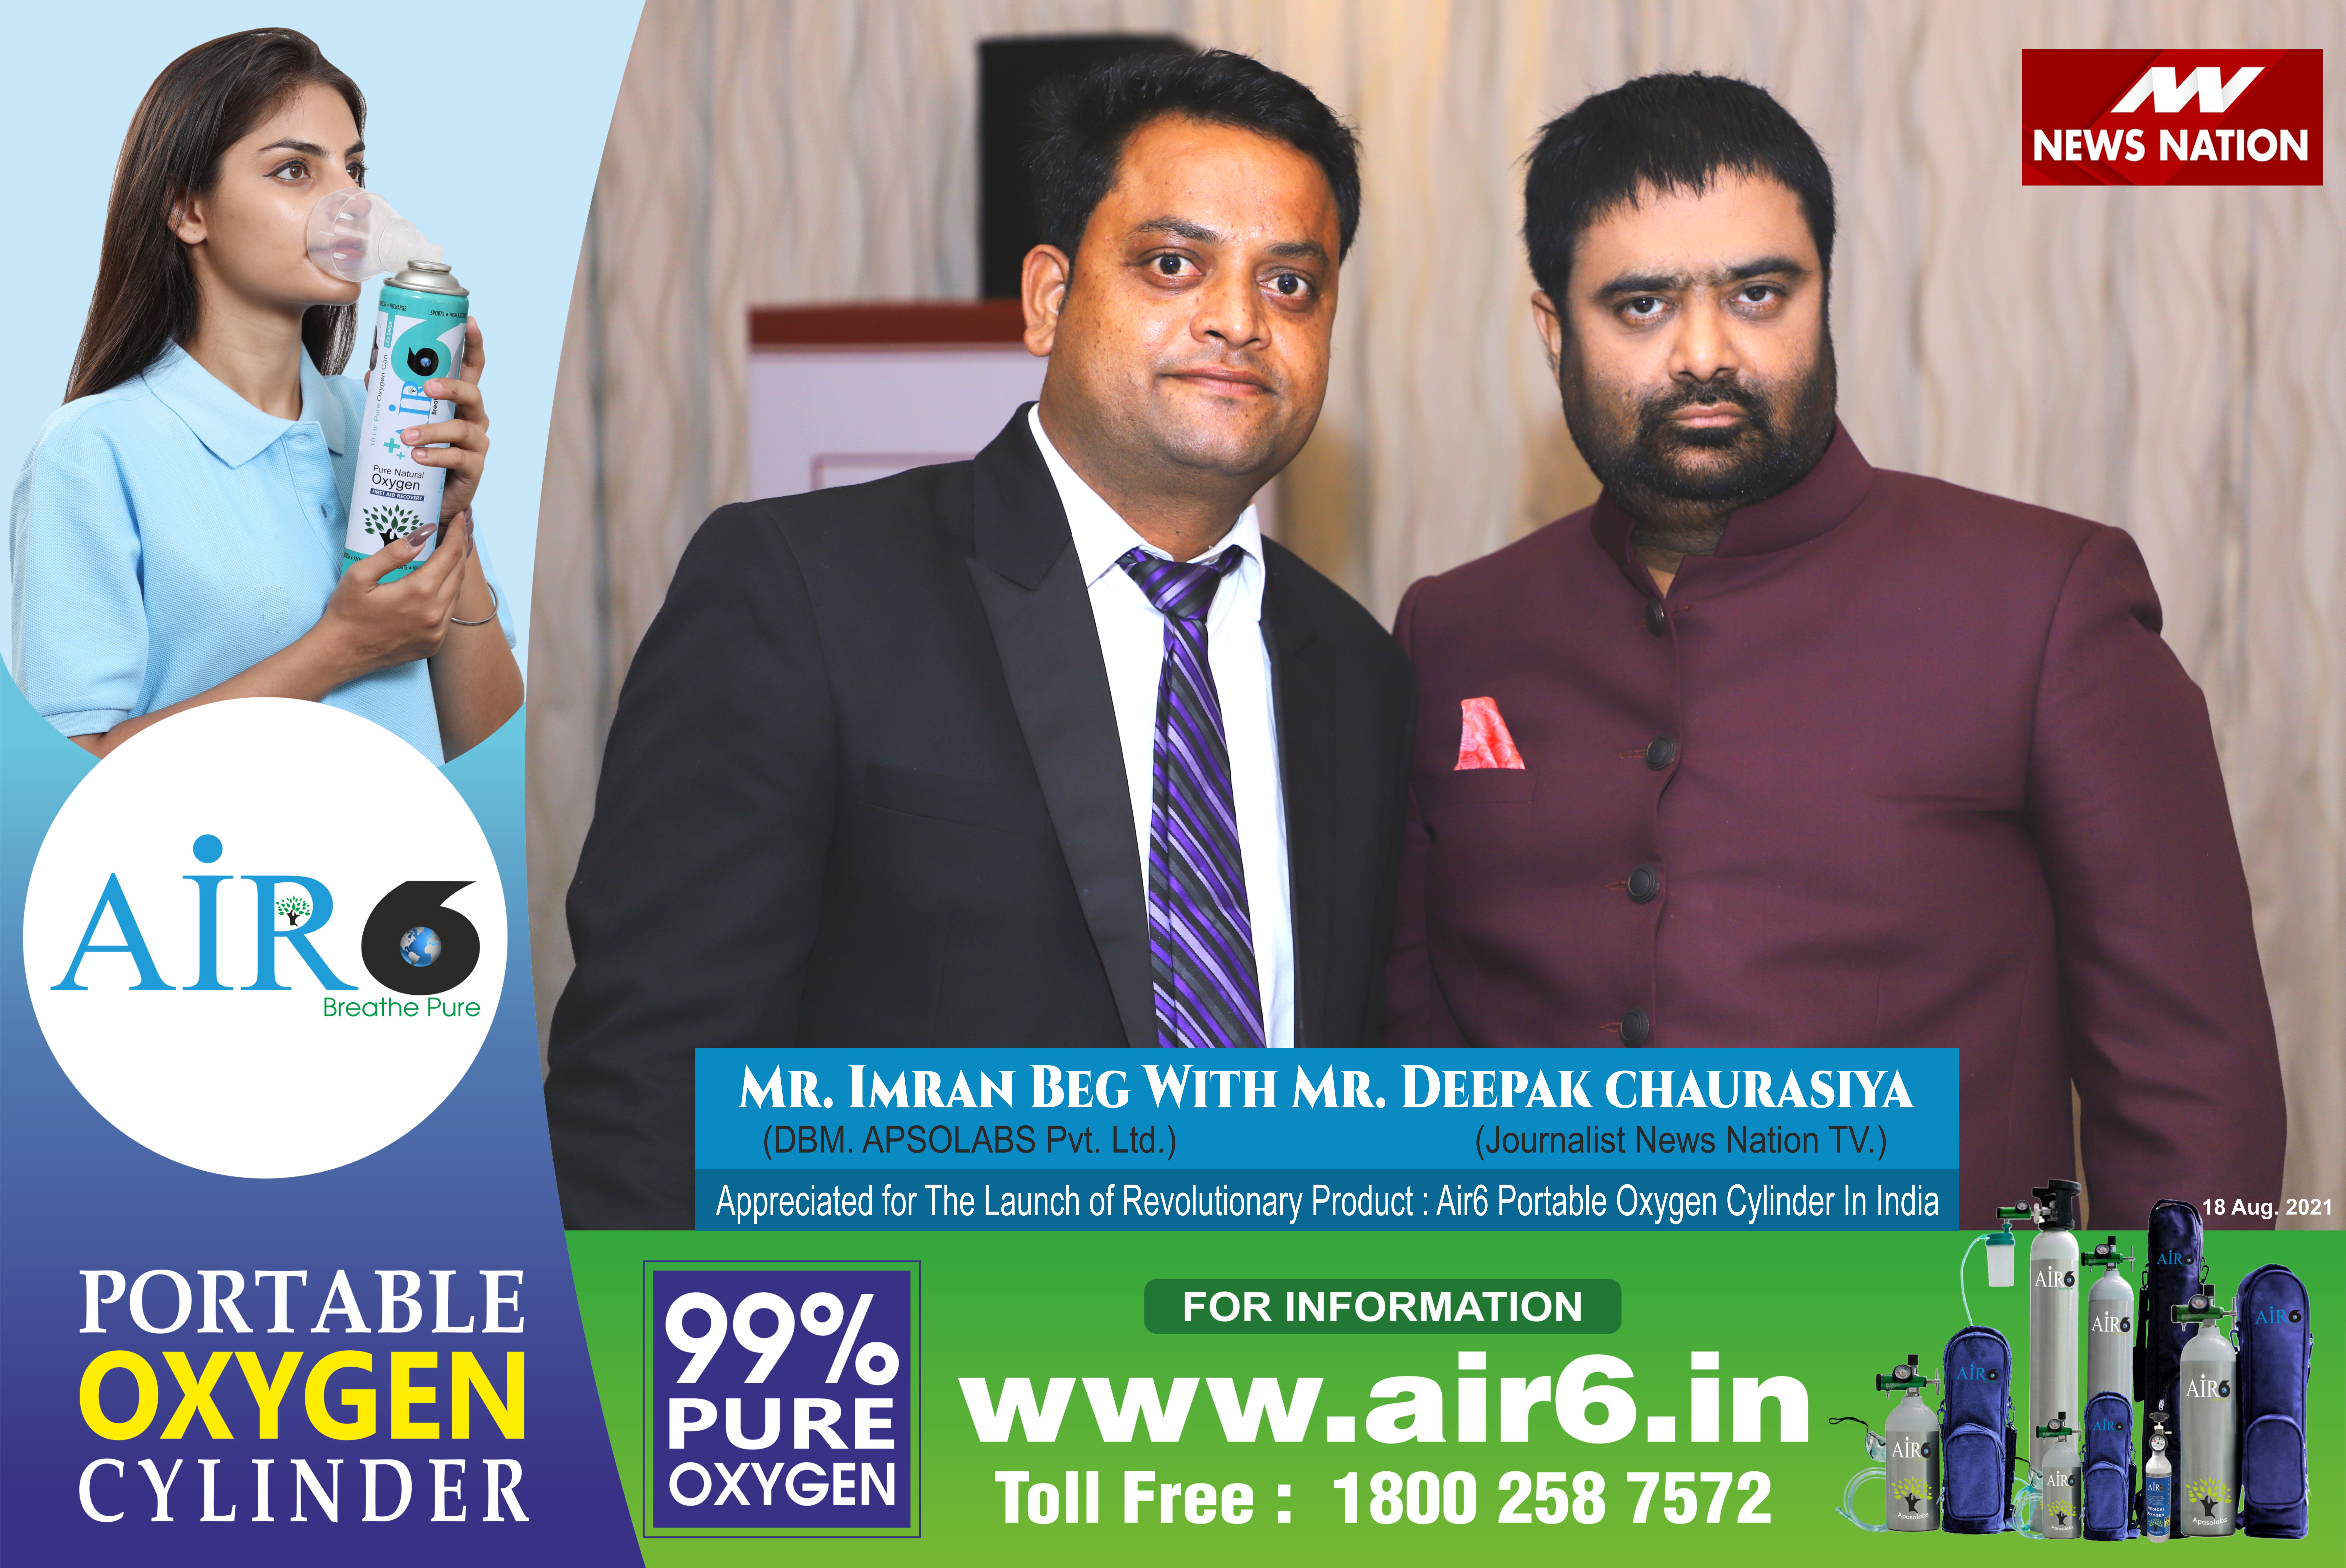 With Mr Deepak Chaurasia Sr. Journalist News nation